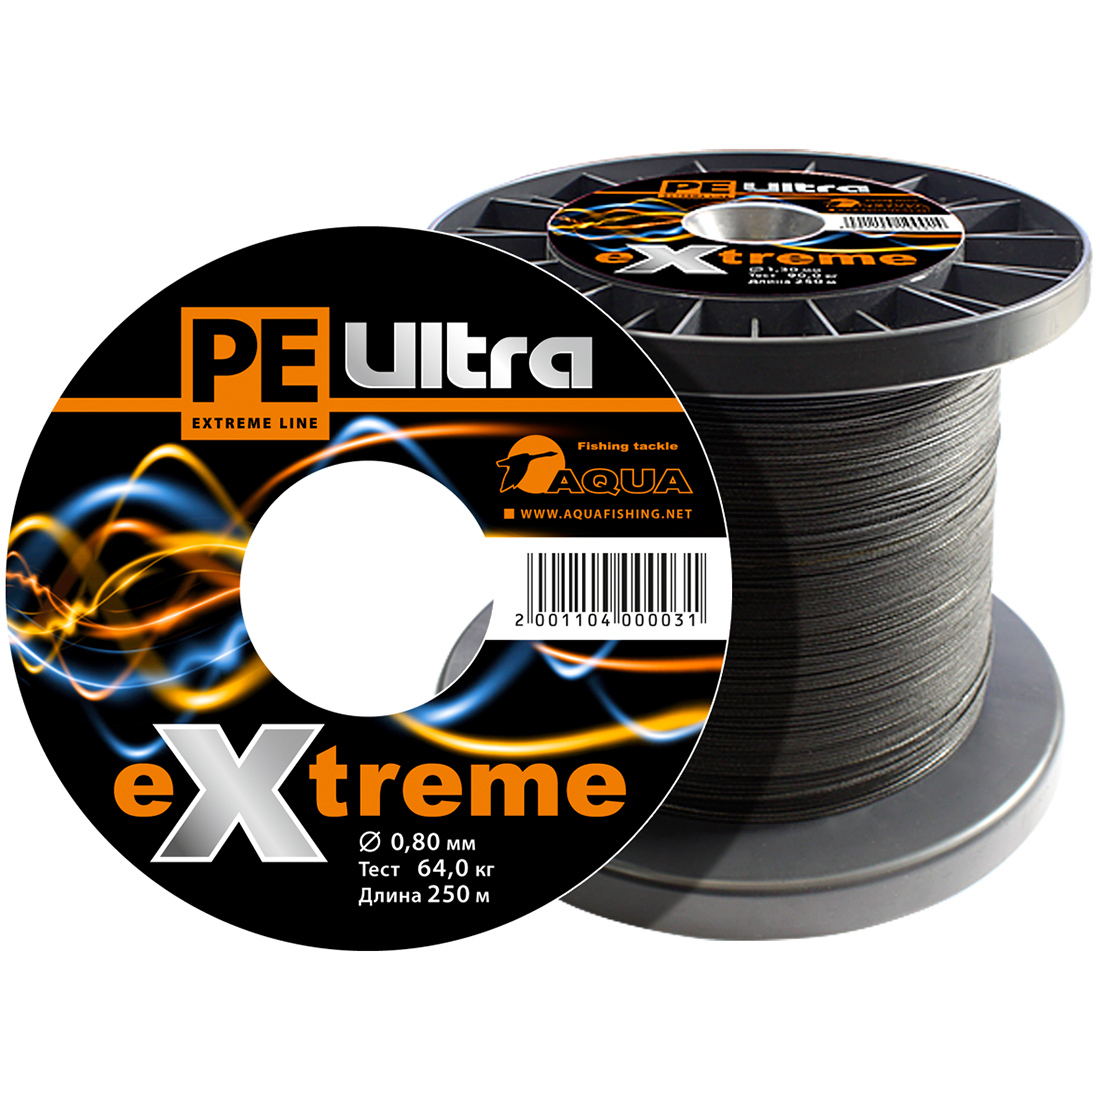 Плетеный Шнур Для Рыбалки Aqua Pe Ultra Extreme 0,80mm (Цвет Черный) 250m